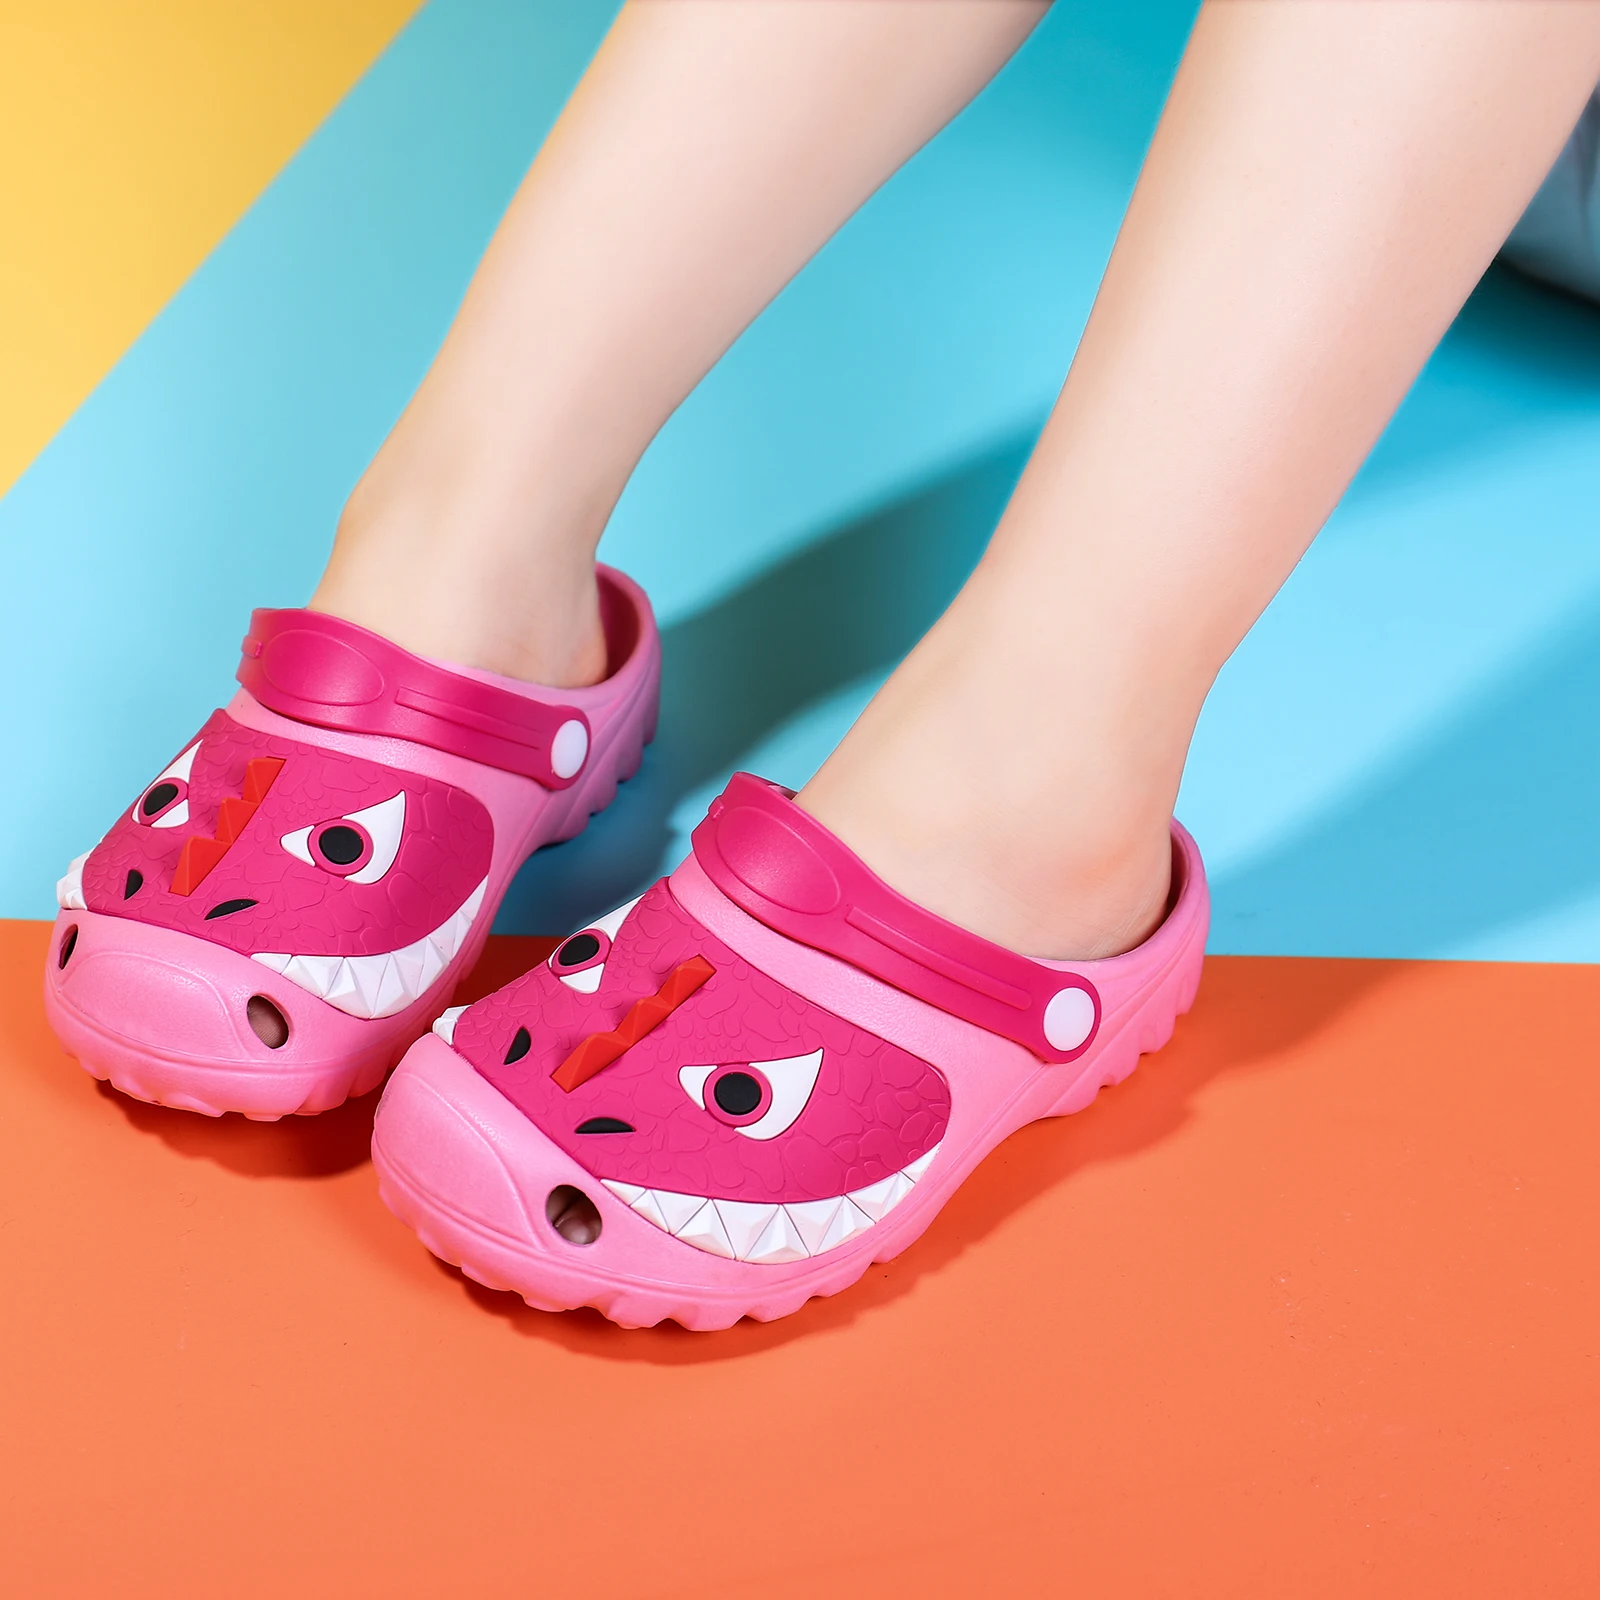 Новые детские тапочки, пляжная обувь Eva для теплых детских Сабо